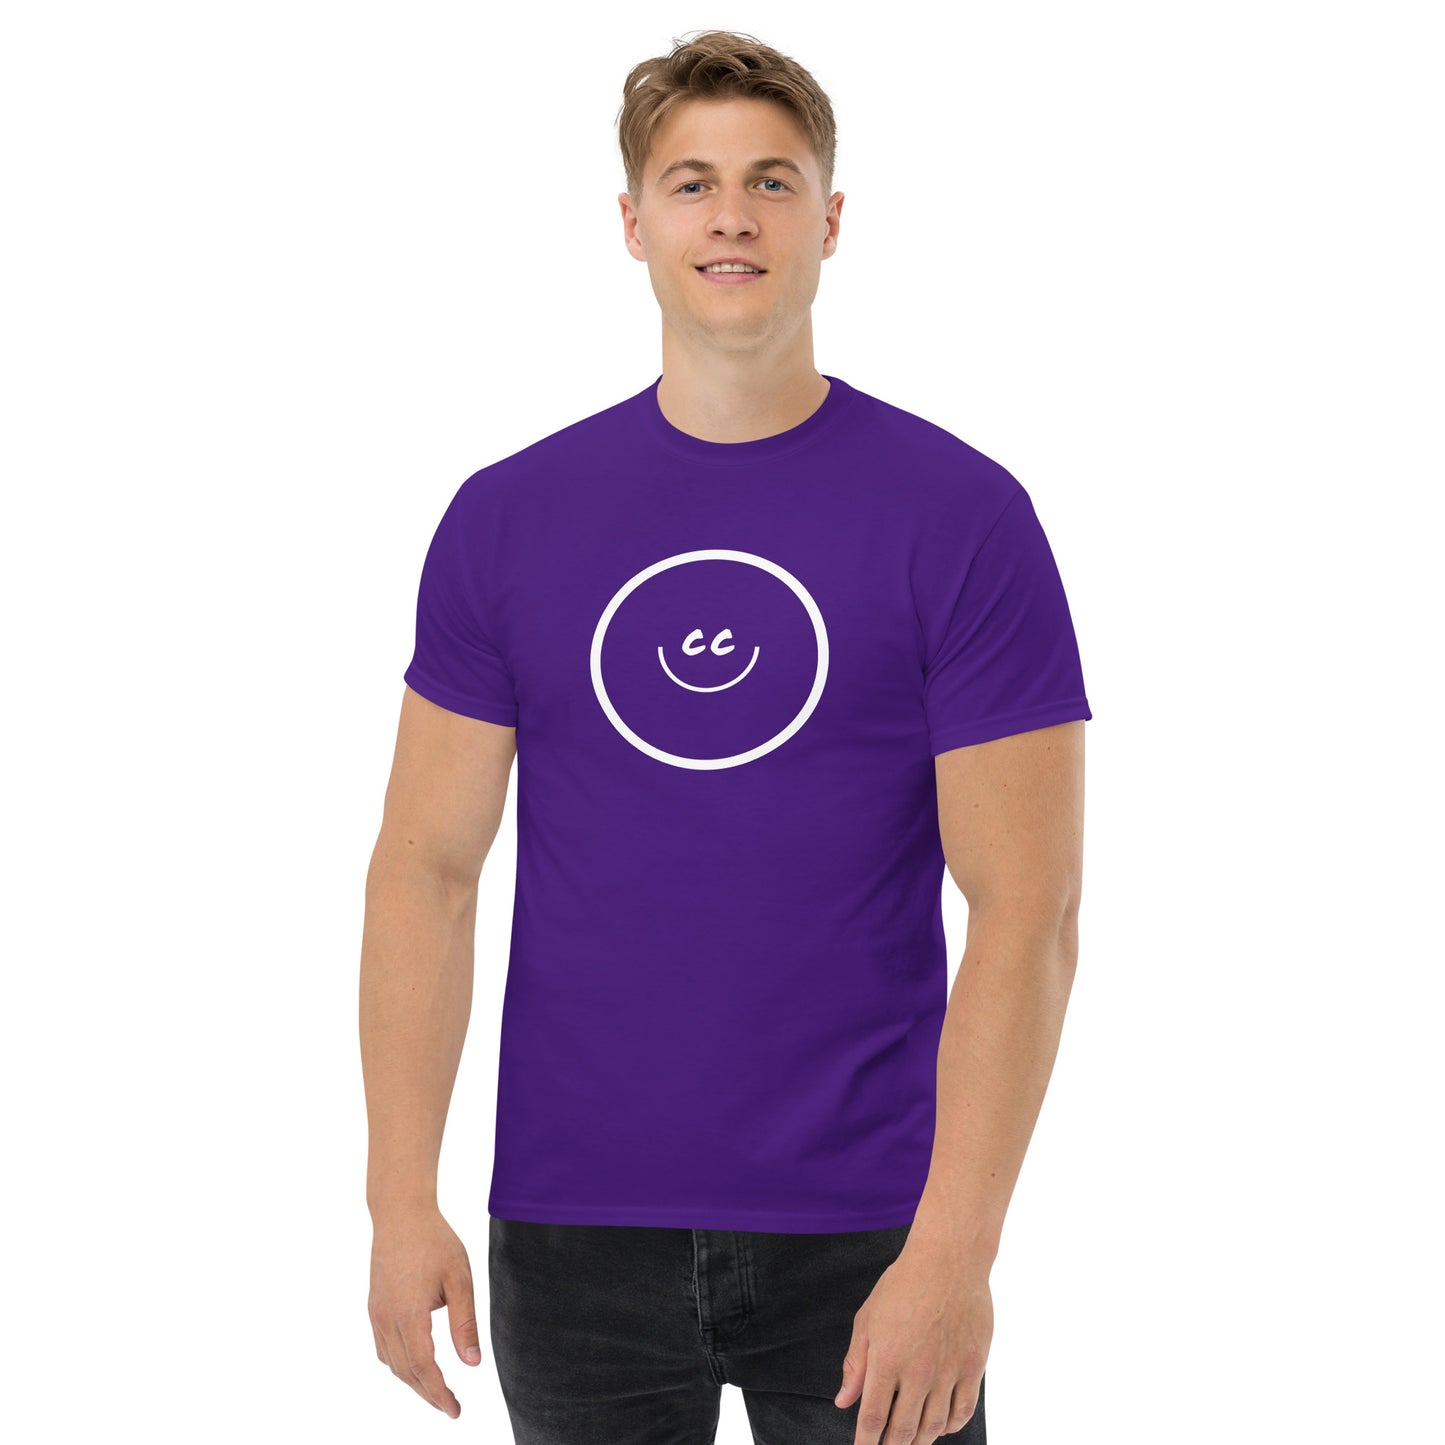 Big Smile Tee in Purple - Short Sleeve